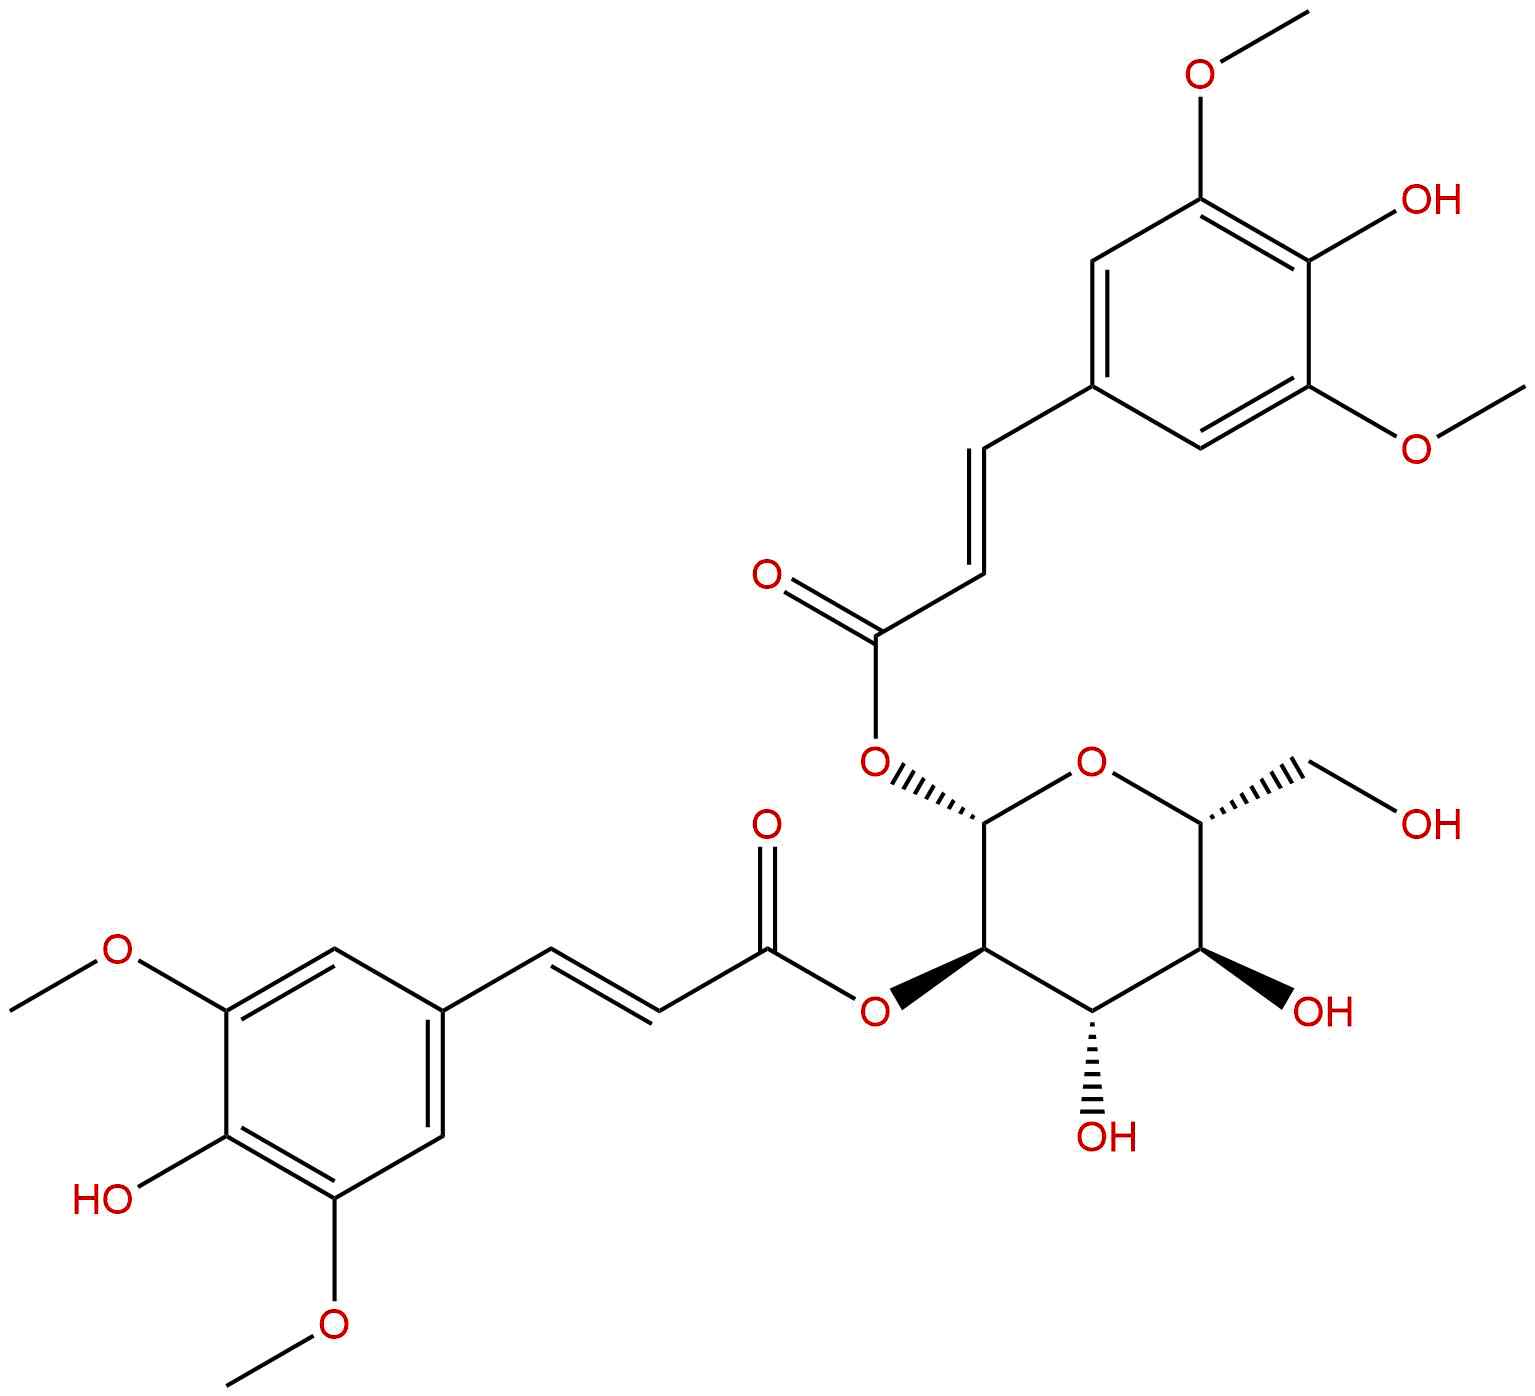 1,2-Disinapoylglucose